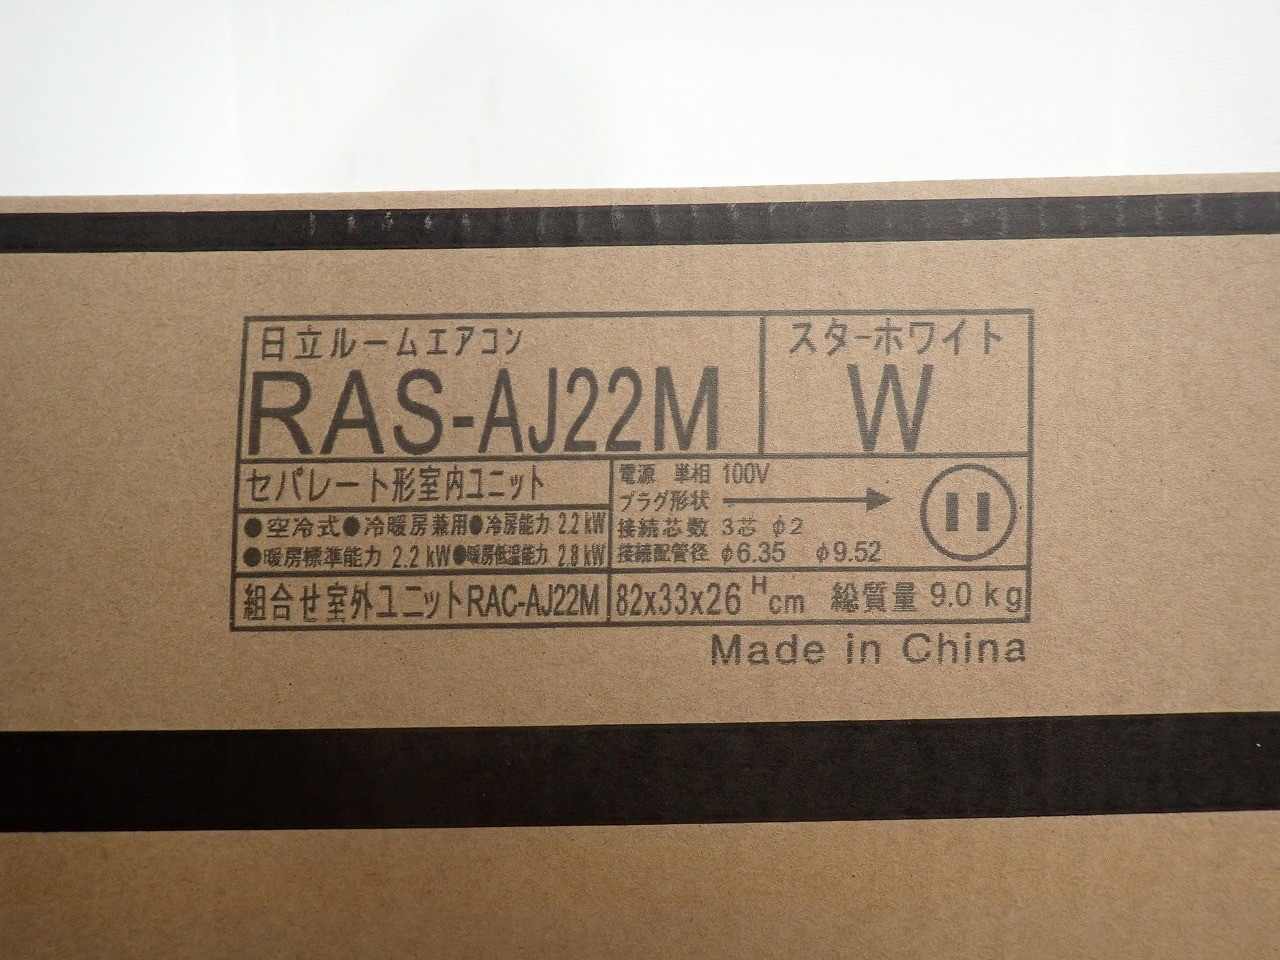 RAS-AJ22M-W